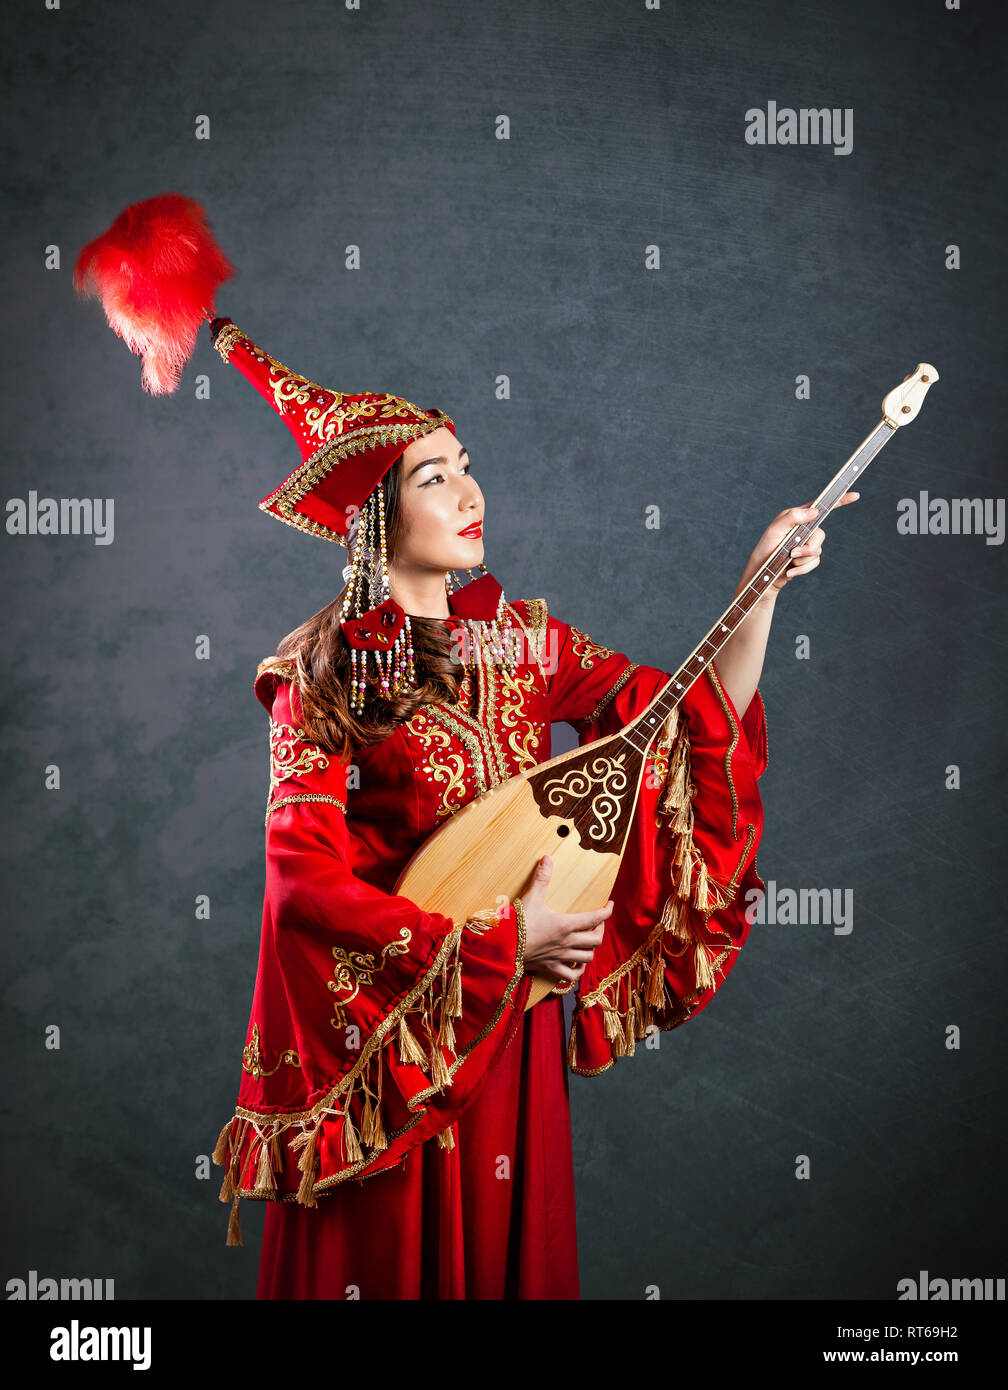 Femme en costume rouge kazakh dombra jouant des instruments de musique kazakh à l'arrière-plan gris Banque D'Images